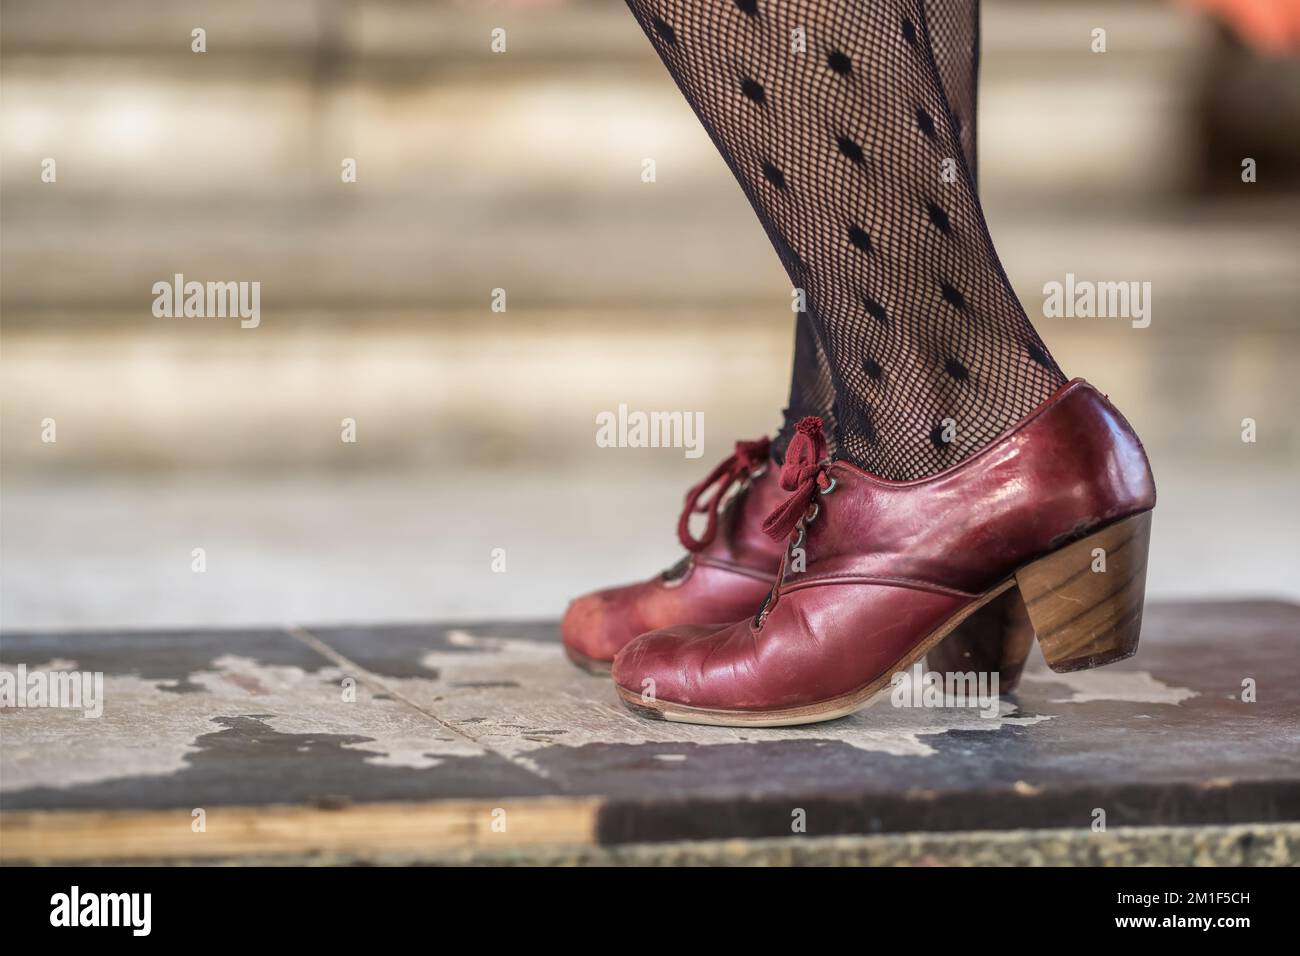 Danseurs de flamenco jambes en chaussures rouges, Andalousie, Espagne Banque D'Images